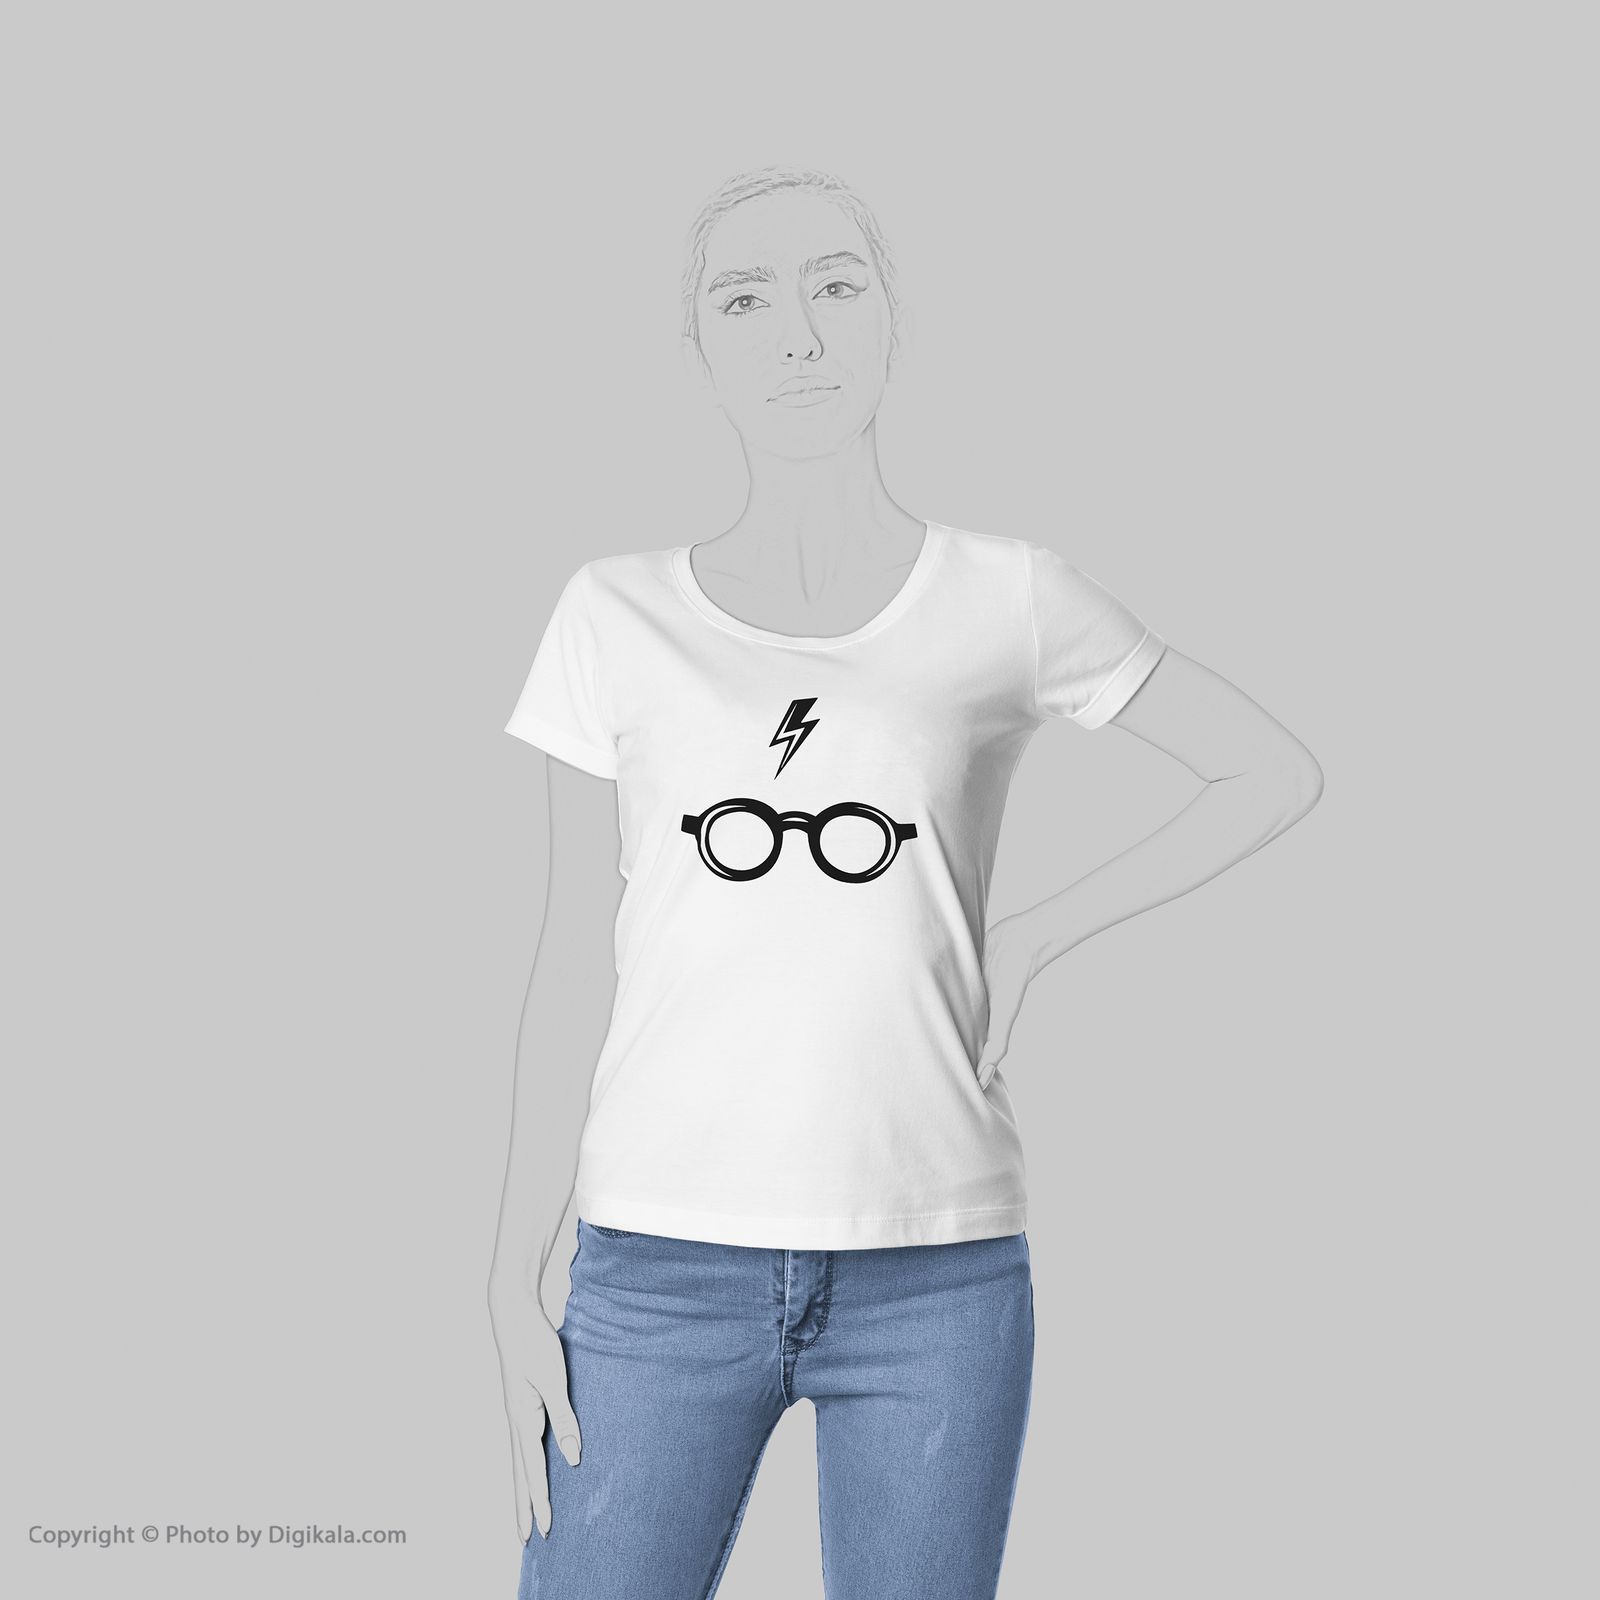 تی شرت زنانه به رسم طرح هری پاتر کد 5511 -  - 5